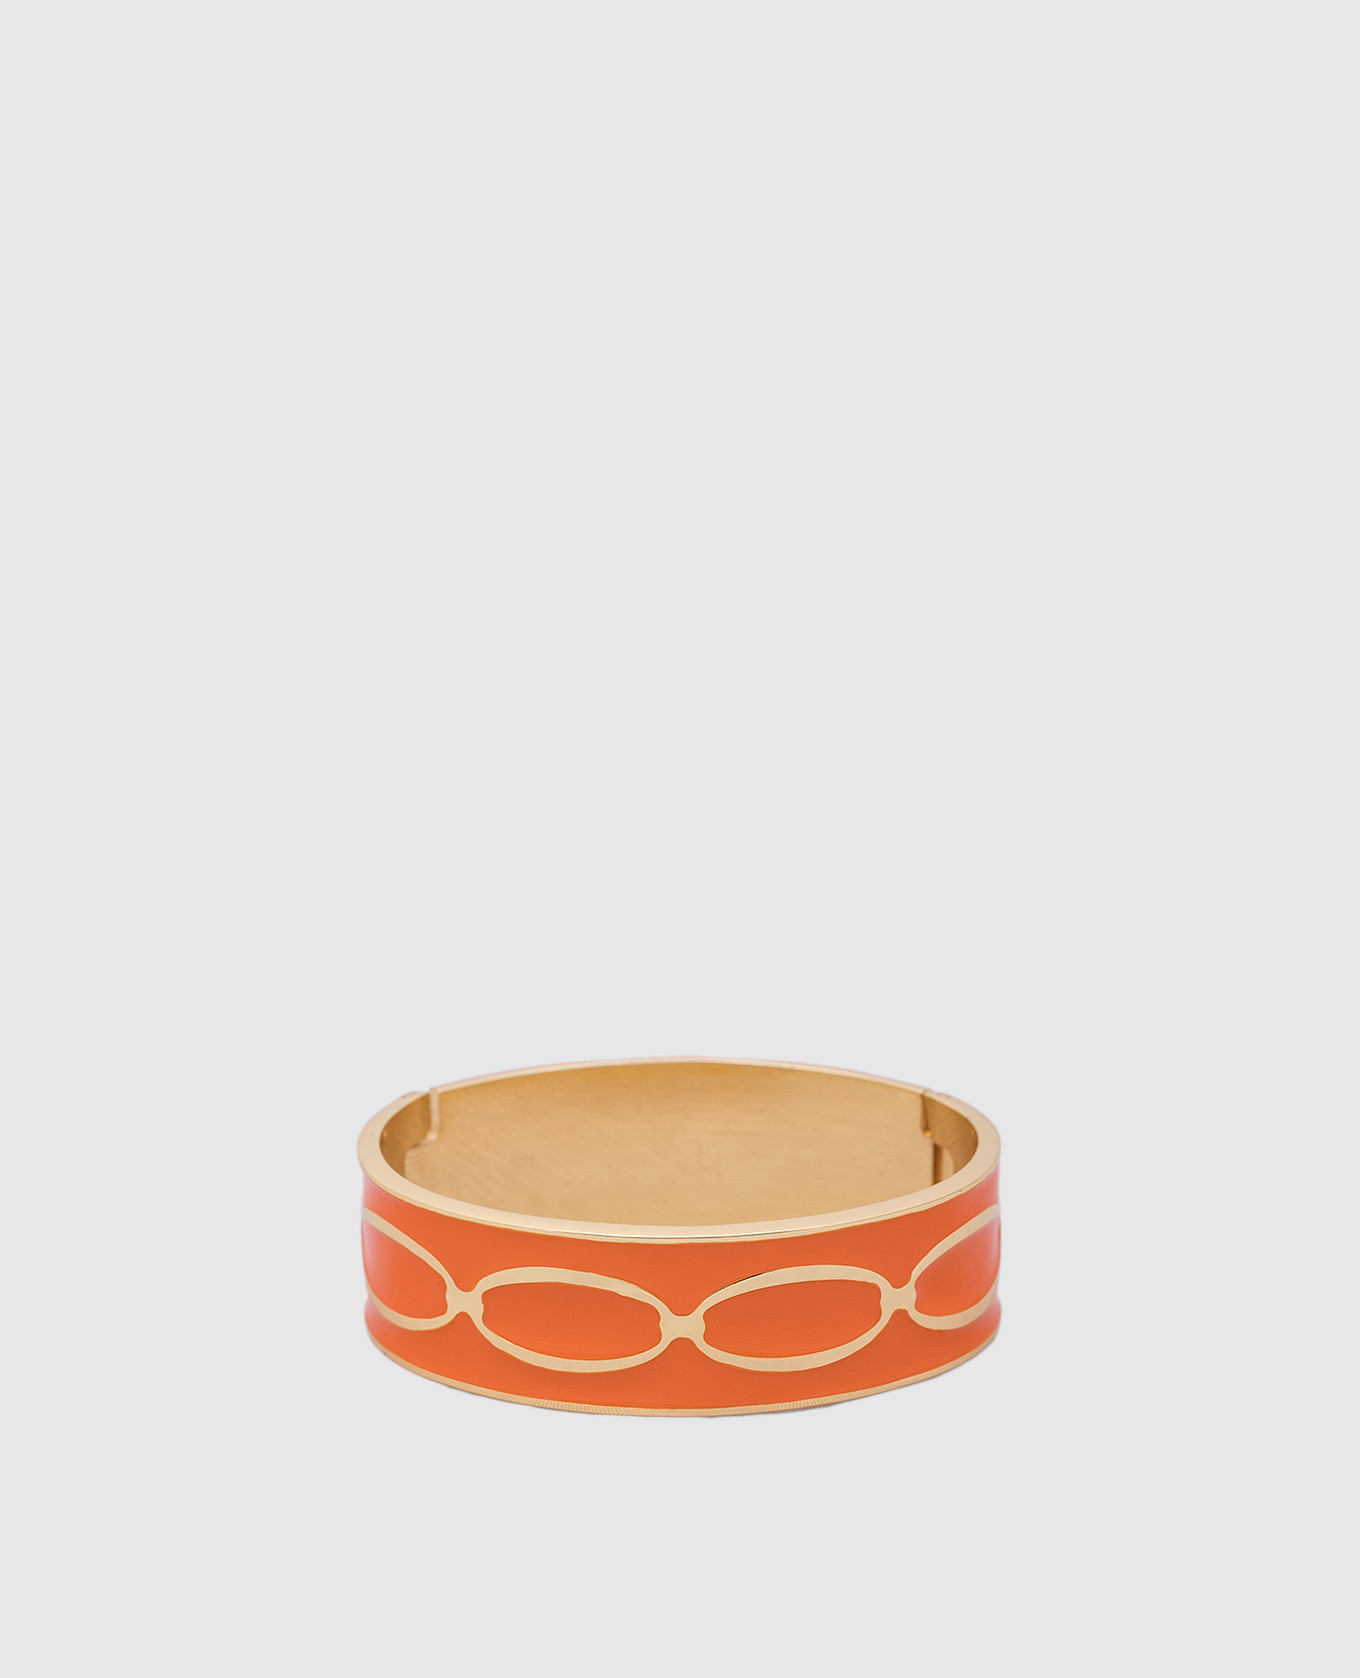 Orange Knot bracelet with 24k gold plating